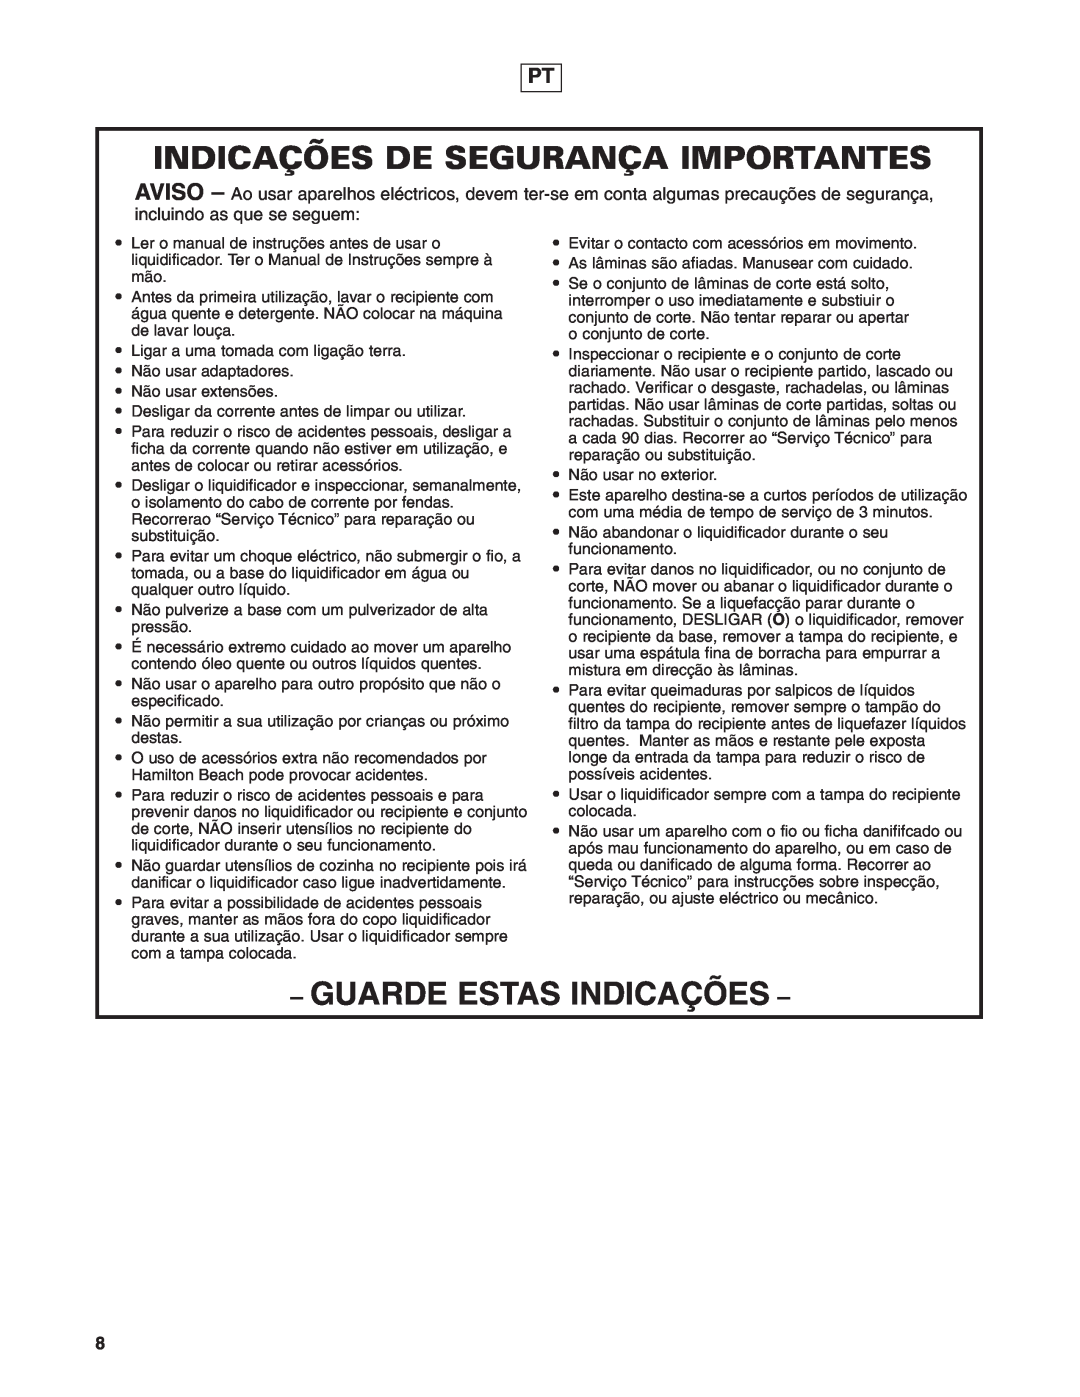 Hamilton Beach 908 Series operation manual Indicações De Segurança Importantes, Guarde Estas Indicações 